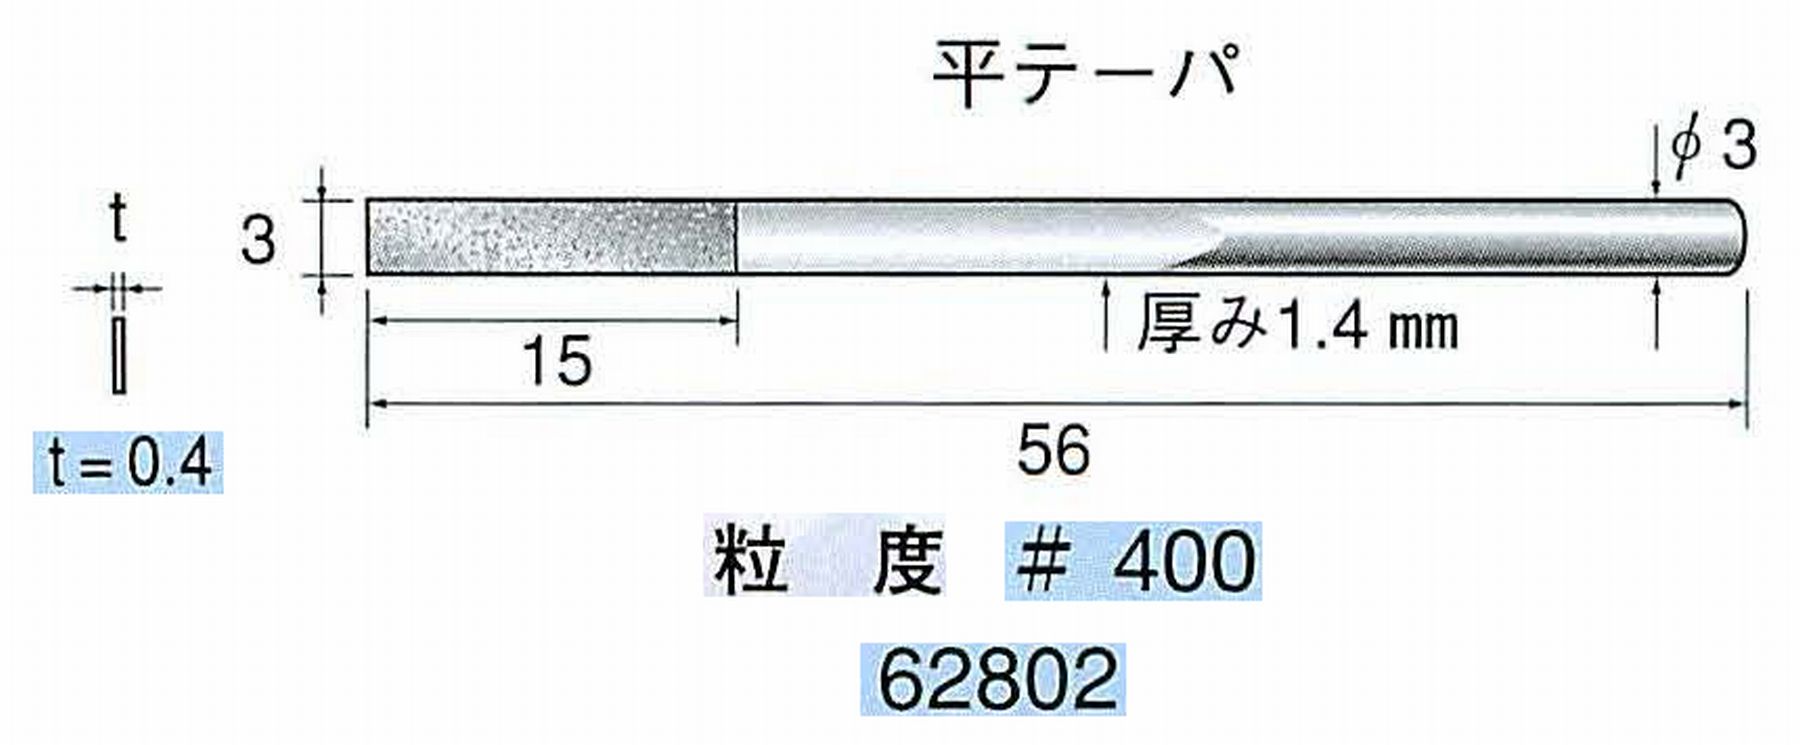 ナカニシ/NAKANISHI 電着ダイヤモンドヤスリショートタイプ 平テーパ 62802